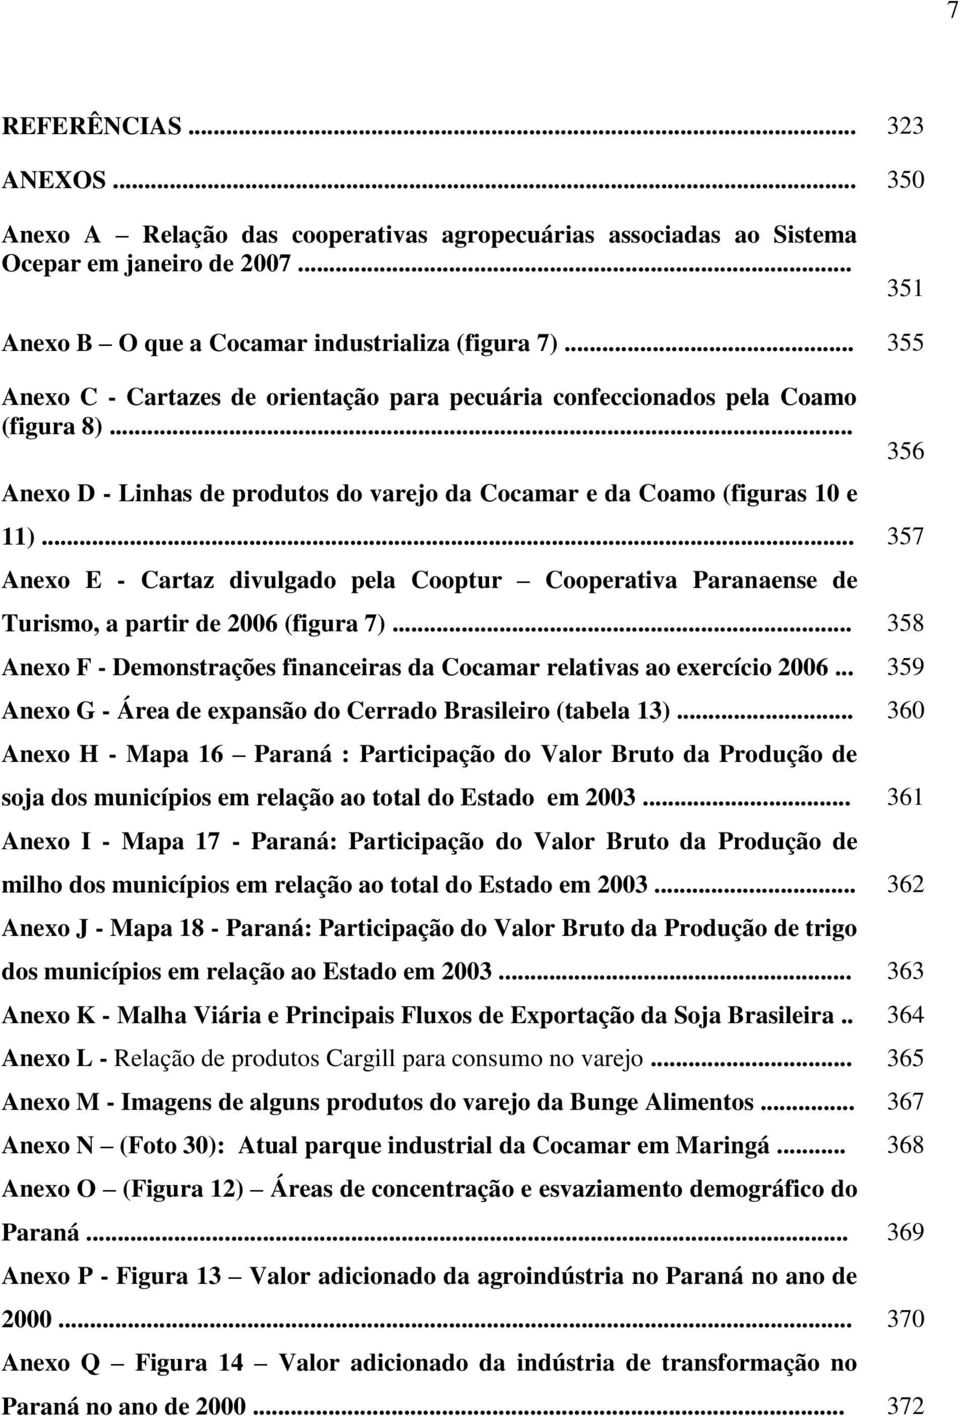 .. 357 Anexo E - Cartaz divulgado pela Cooptur Cooperativa Paranaense de Turismo, a partir de 2006 (figura 7)... 358 Anexo F - Demonstrações financeiras da Cocamar relativas ao exercício 2006.